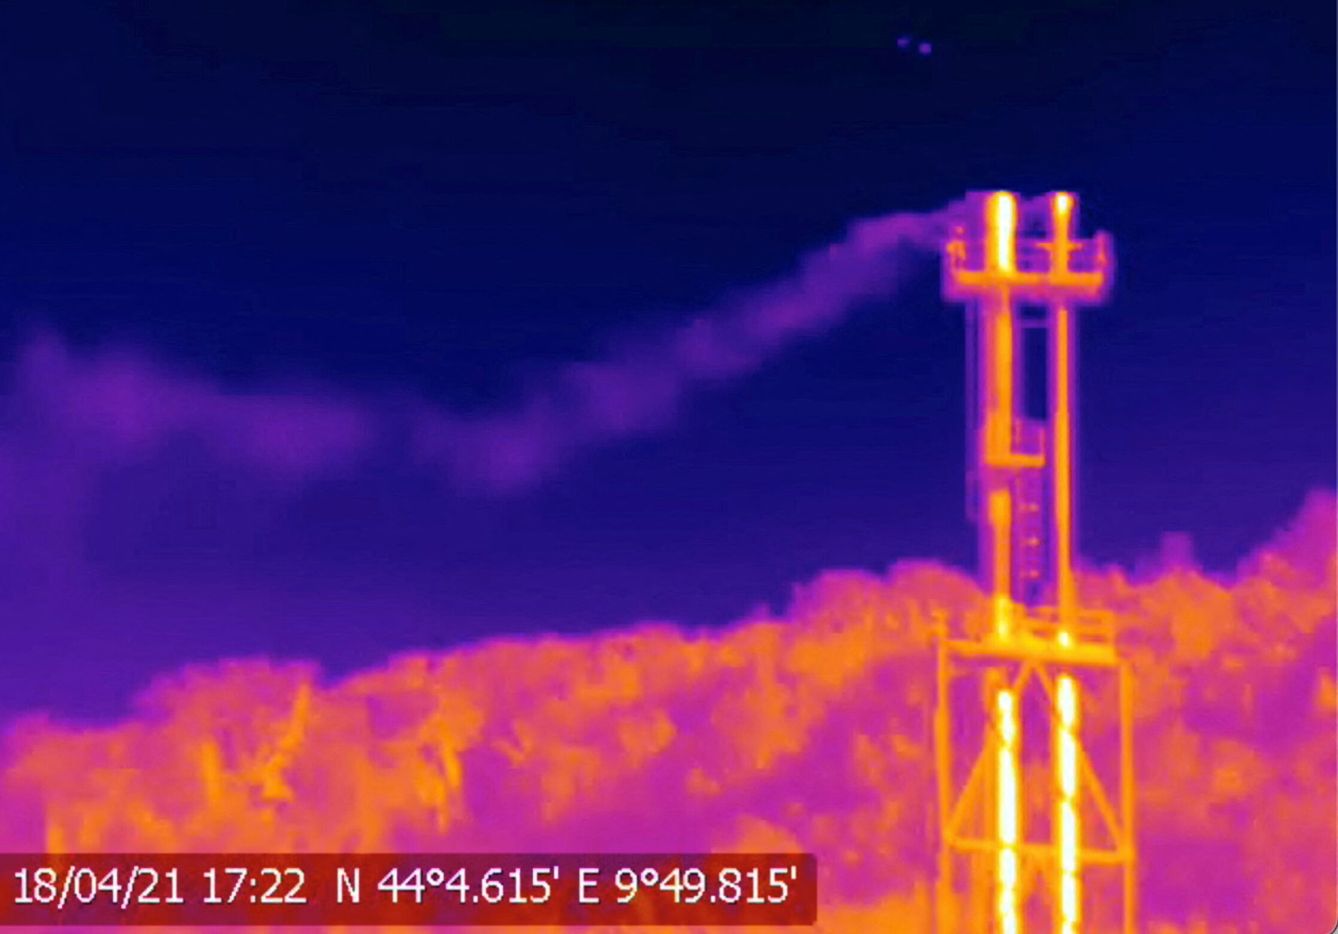 Emisiones de metano de la industria petroquímica captadas por una cámara infrarroja. (CATF/James Turitto/Reuters)